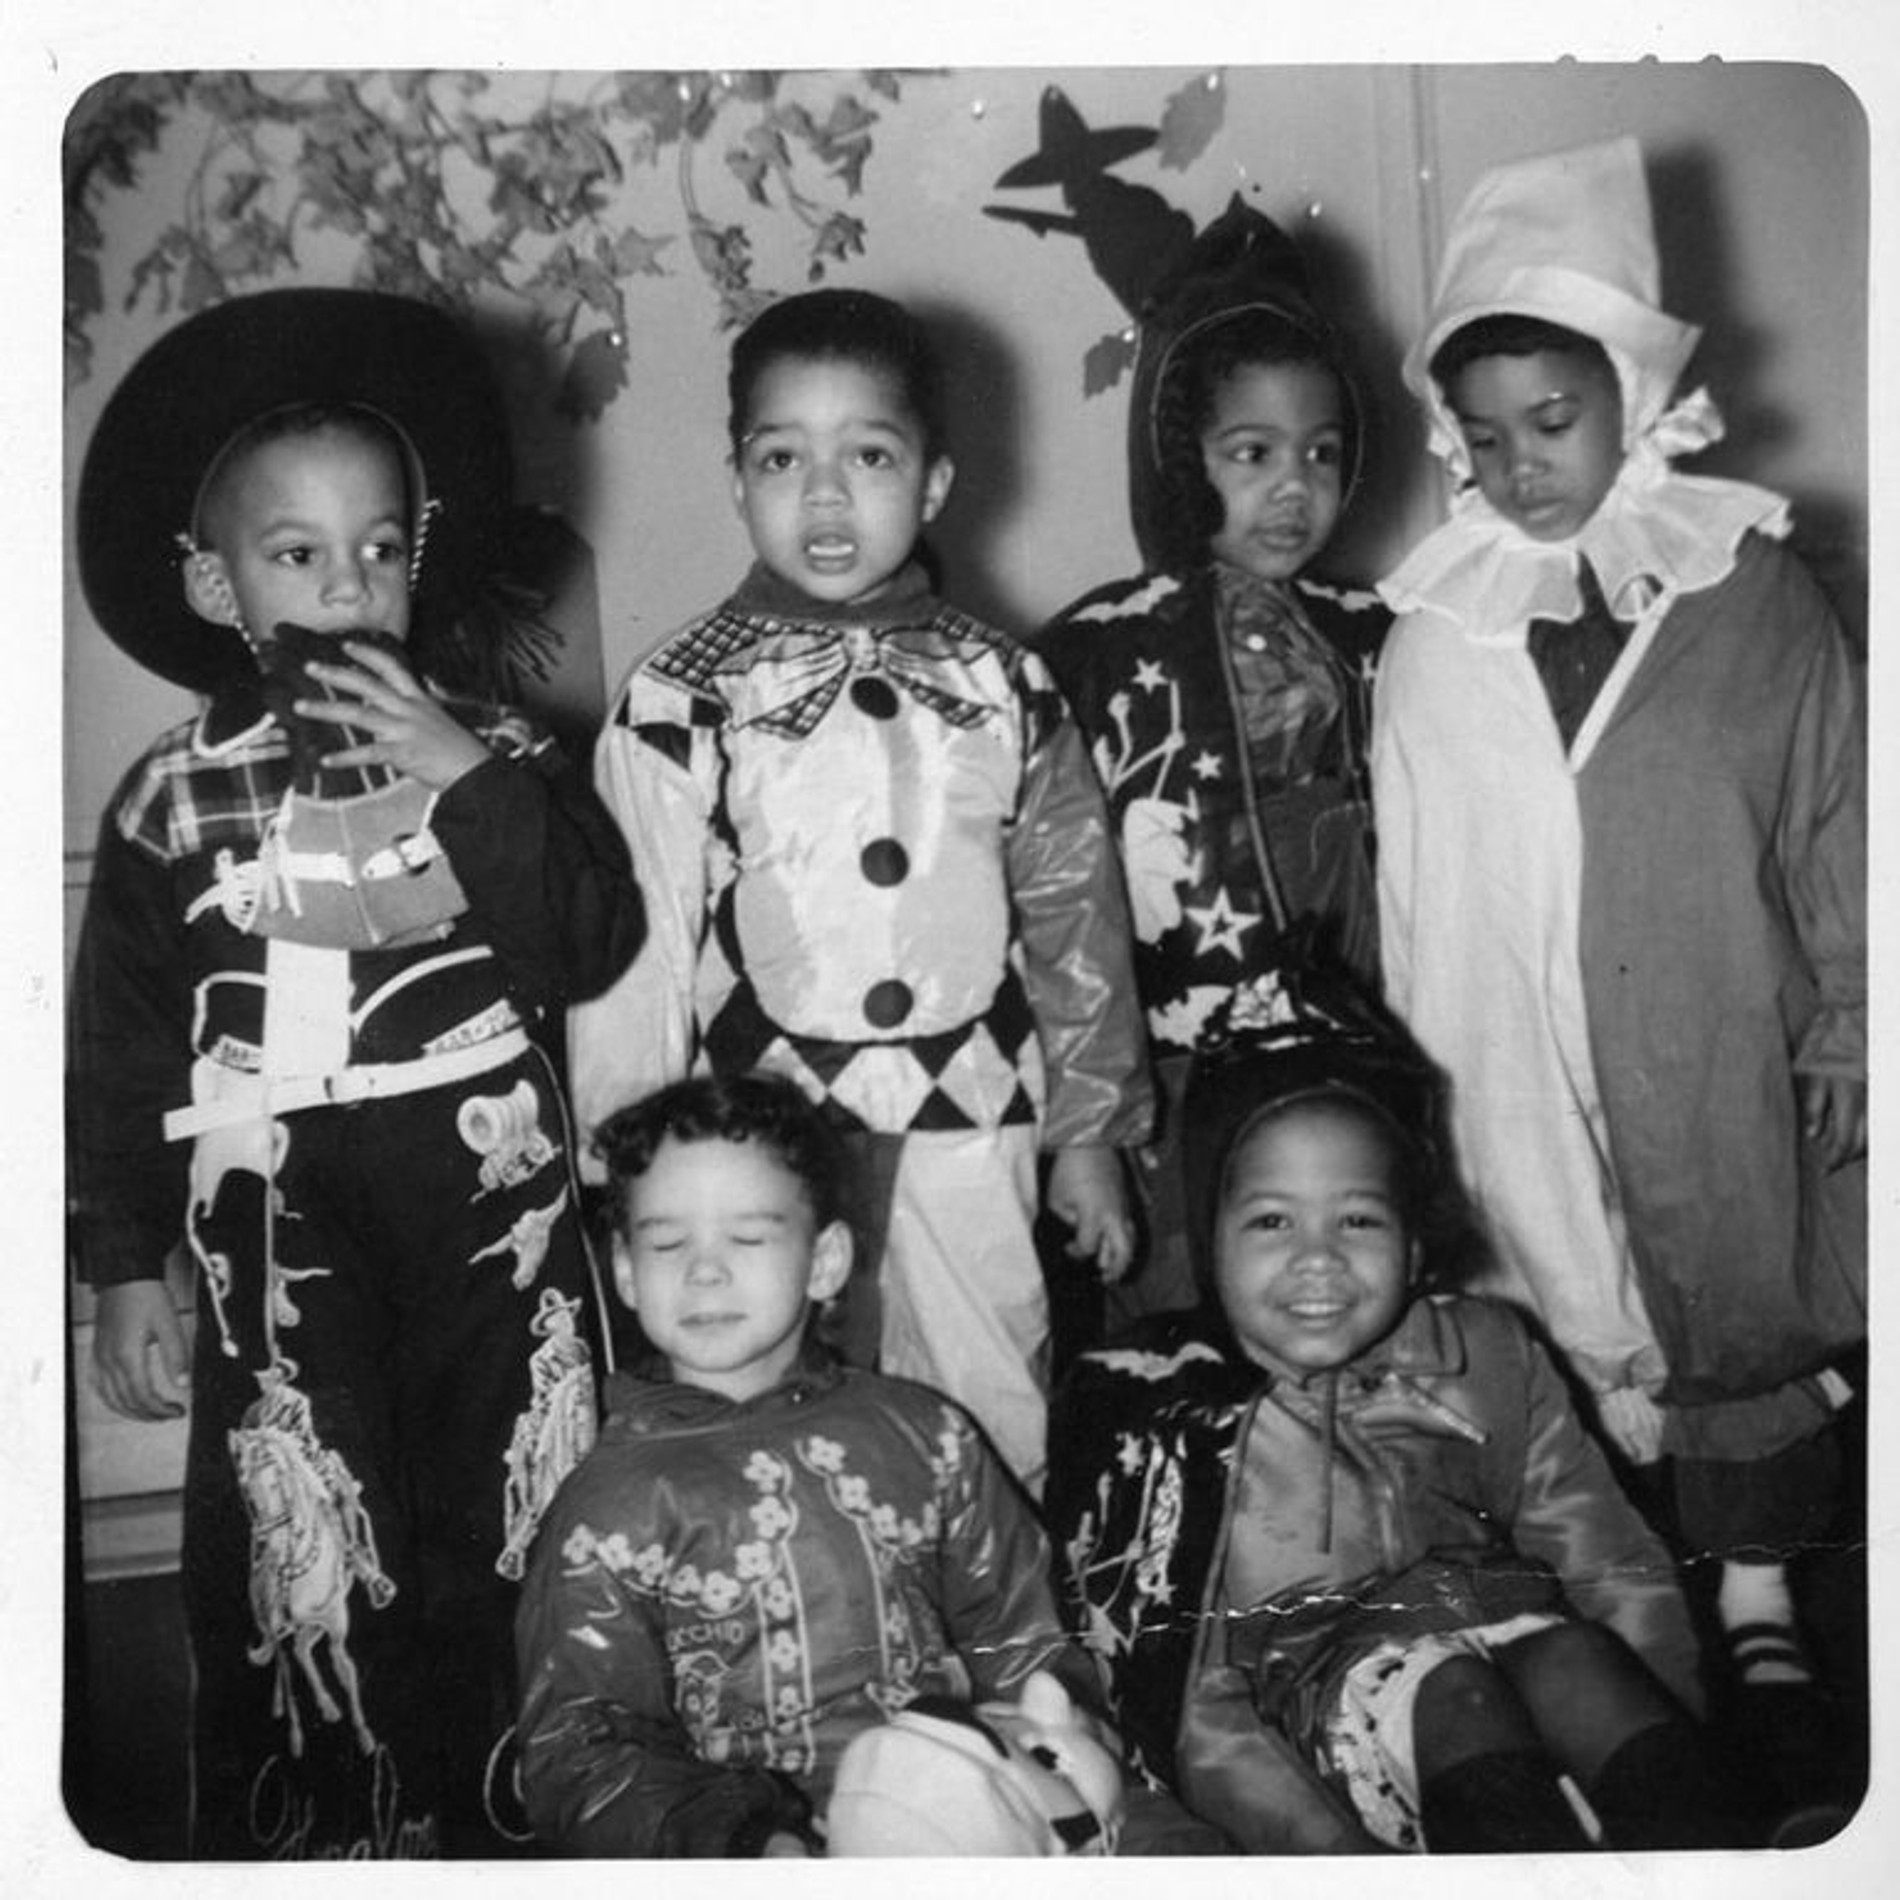 Дети в хэллоуинских костюмах 1940-х годов. 
Источник: архив пресс-службы